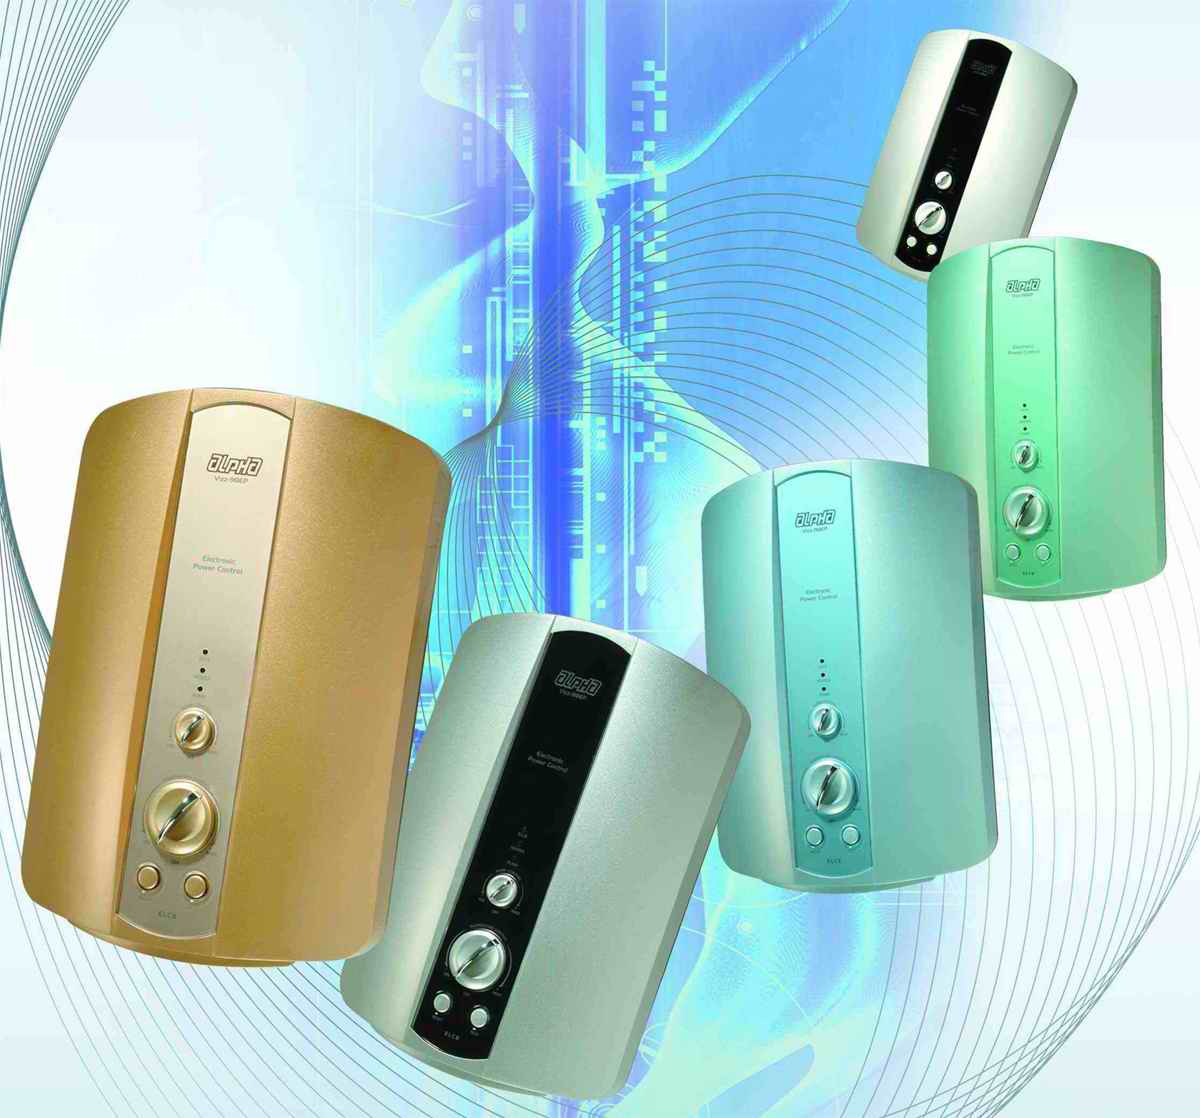  Vizz Series Water Heater (Vizz серию водонагревателей)